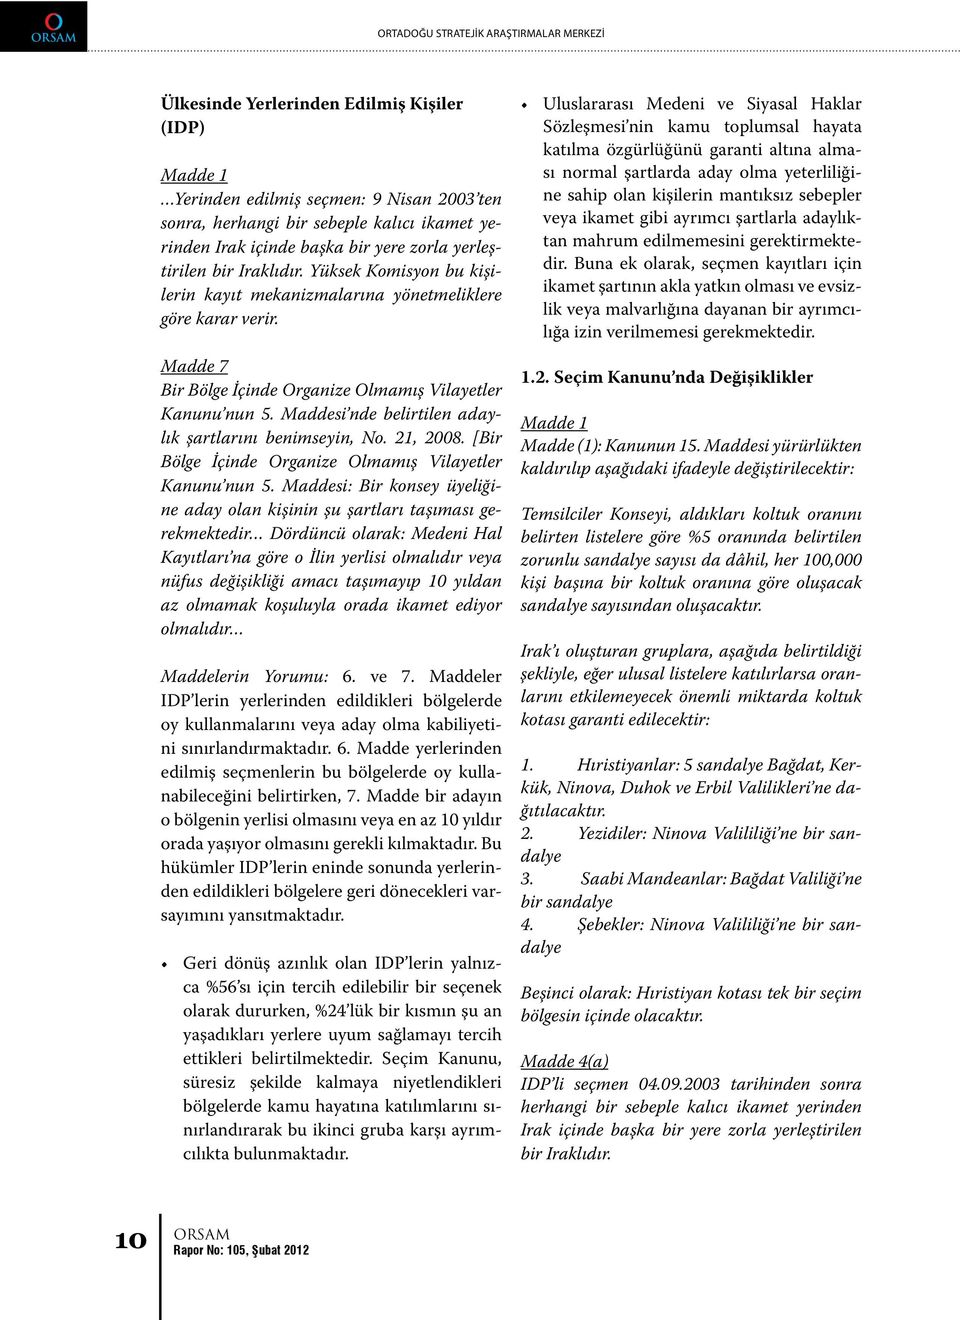 Maddesi nde belirtilen adaylık şartlarını benimseyin, No. 21, 2008. [Bir Bölge İçinde Organize Olmamış Vilayetler Kanunu nun 5.